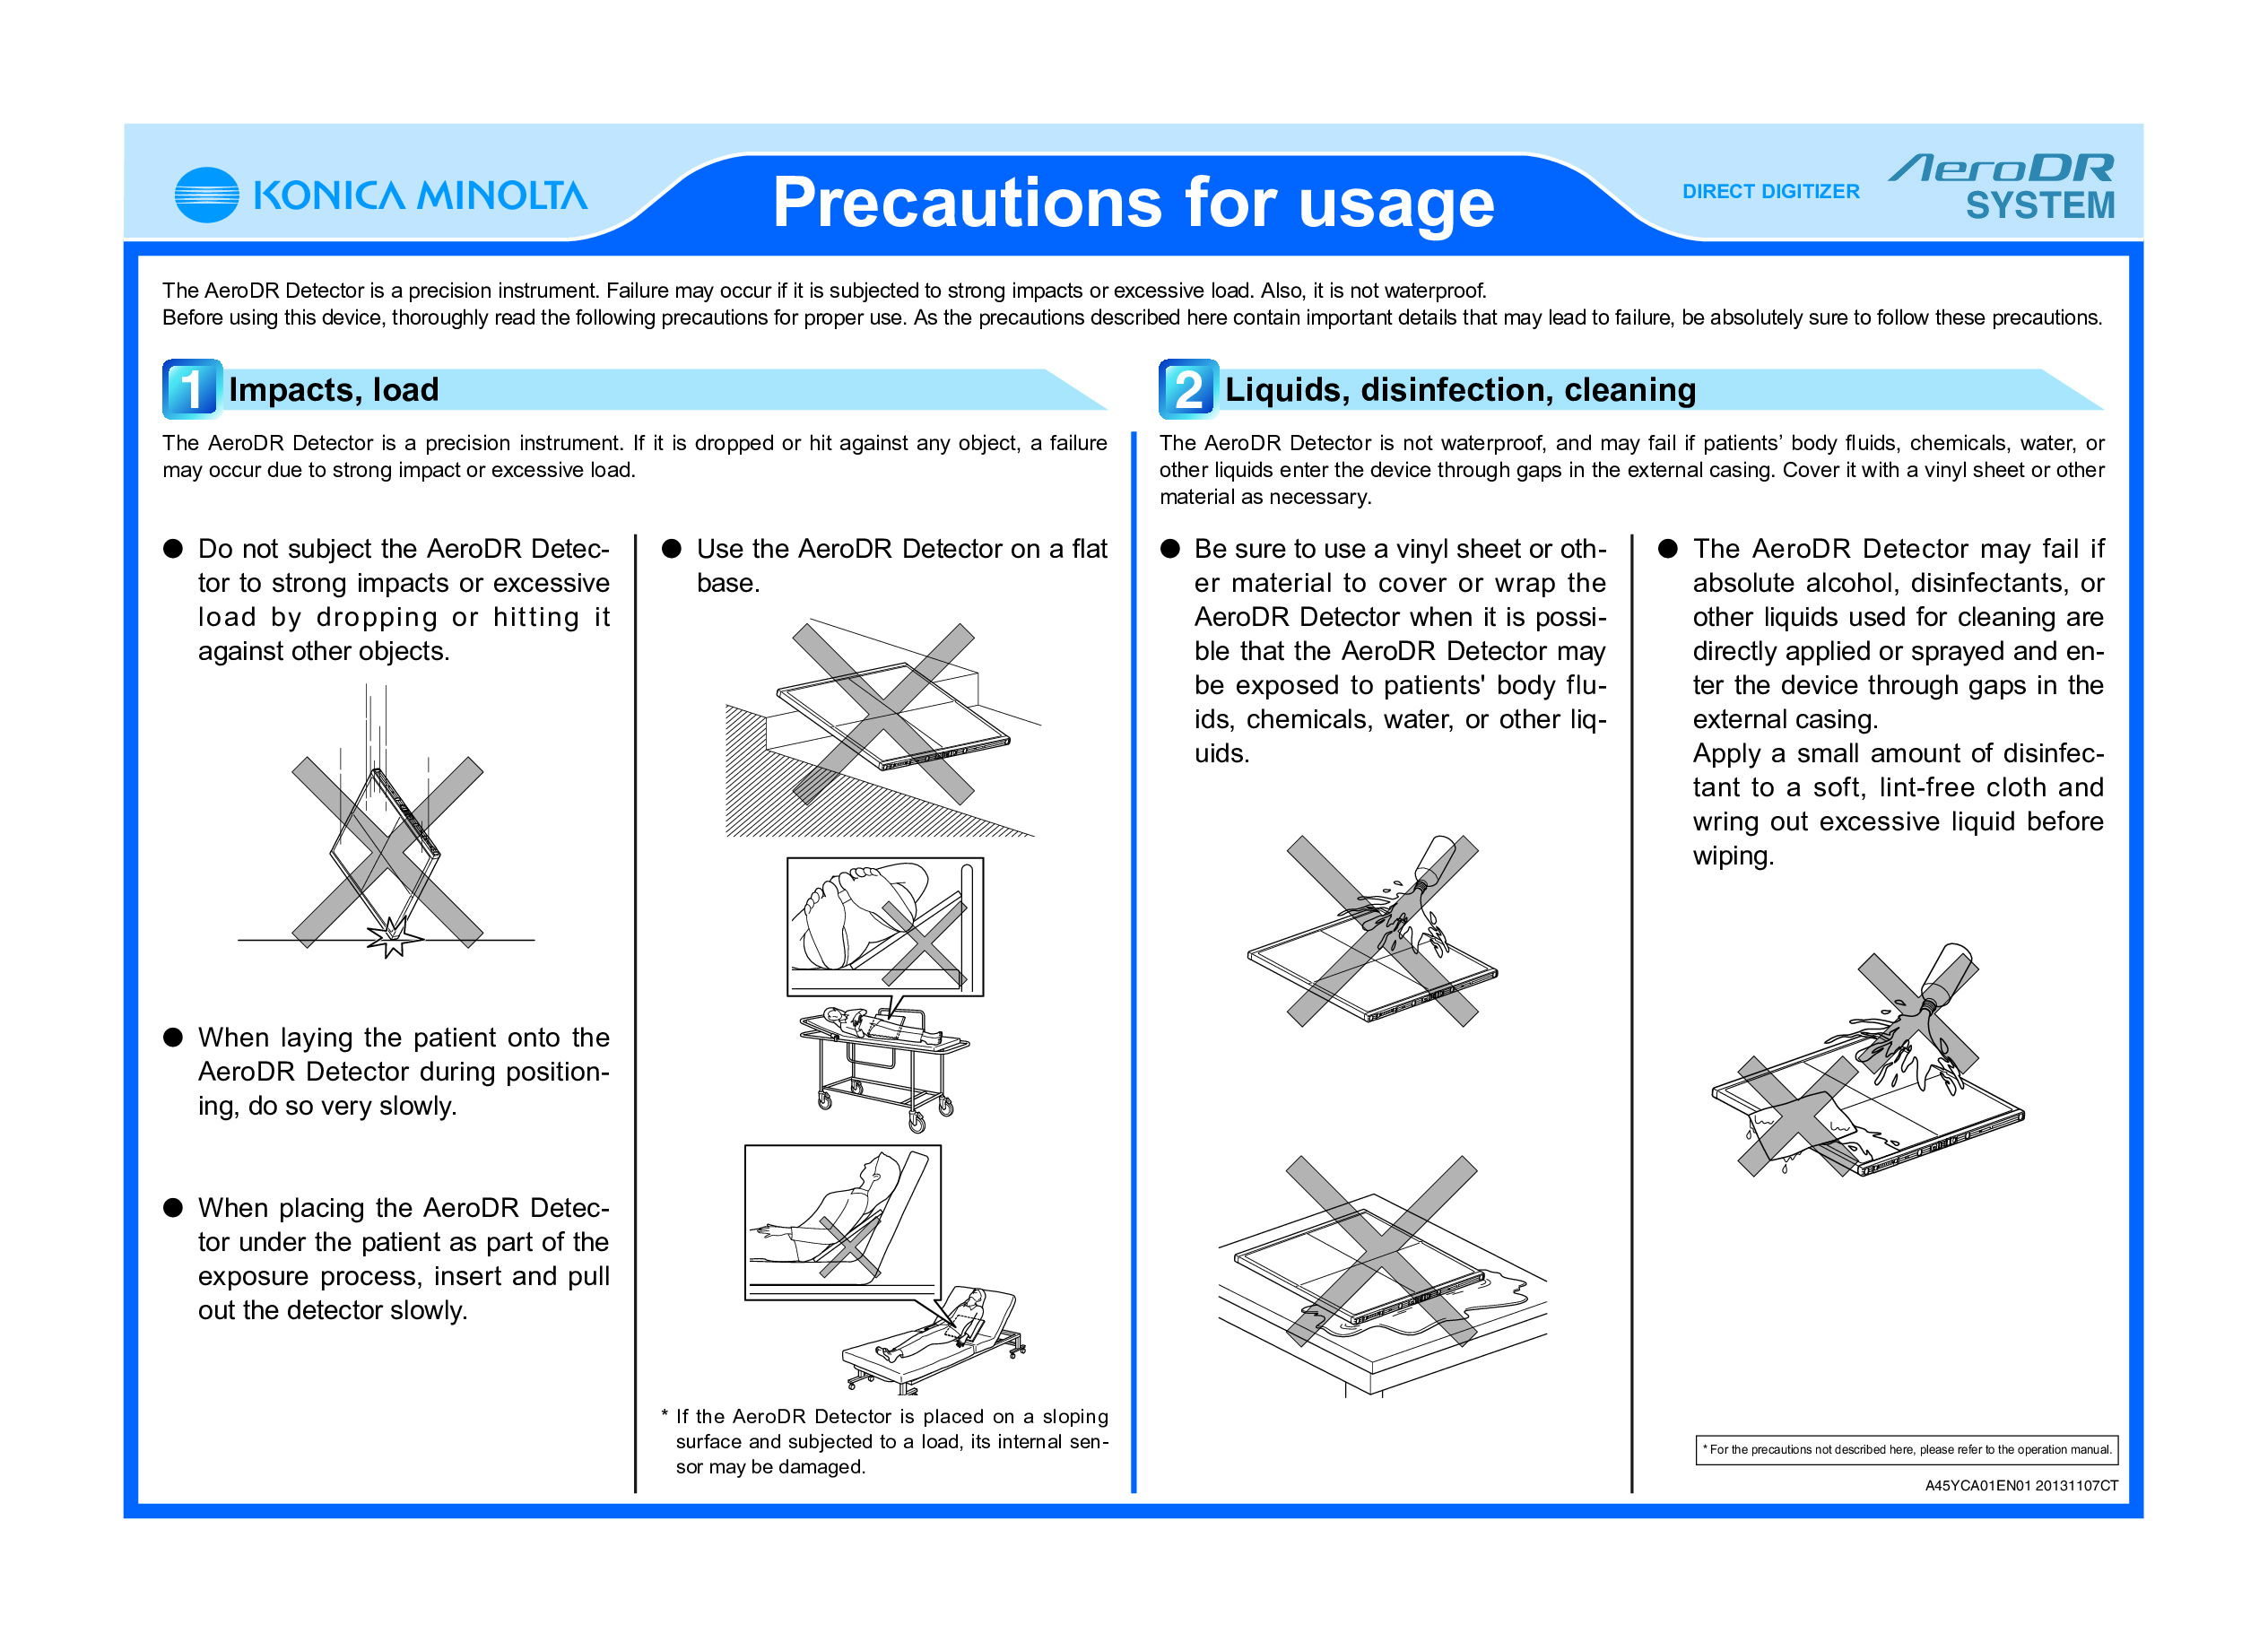 AeroDR_Precautions_of_use_A45YCA01EN01_131107-2_Fix